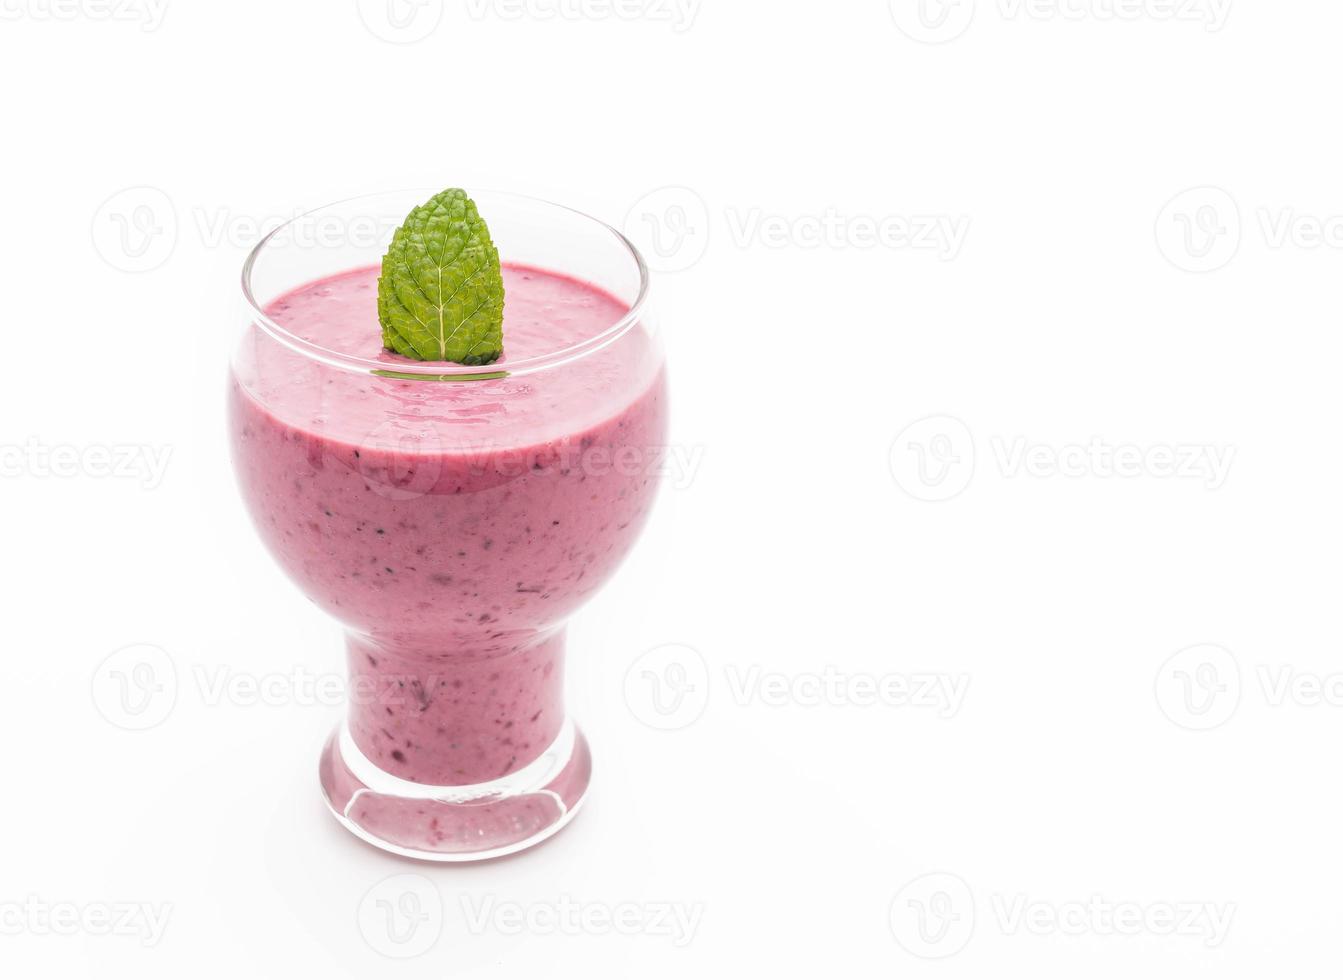 frutas vermelhas misturadas com smoothies de iogurte no fundo branco foto